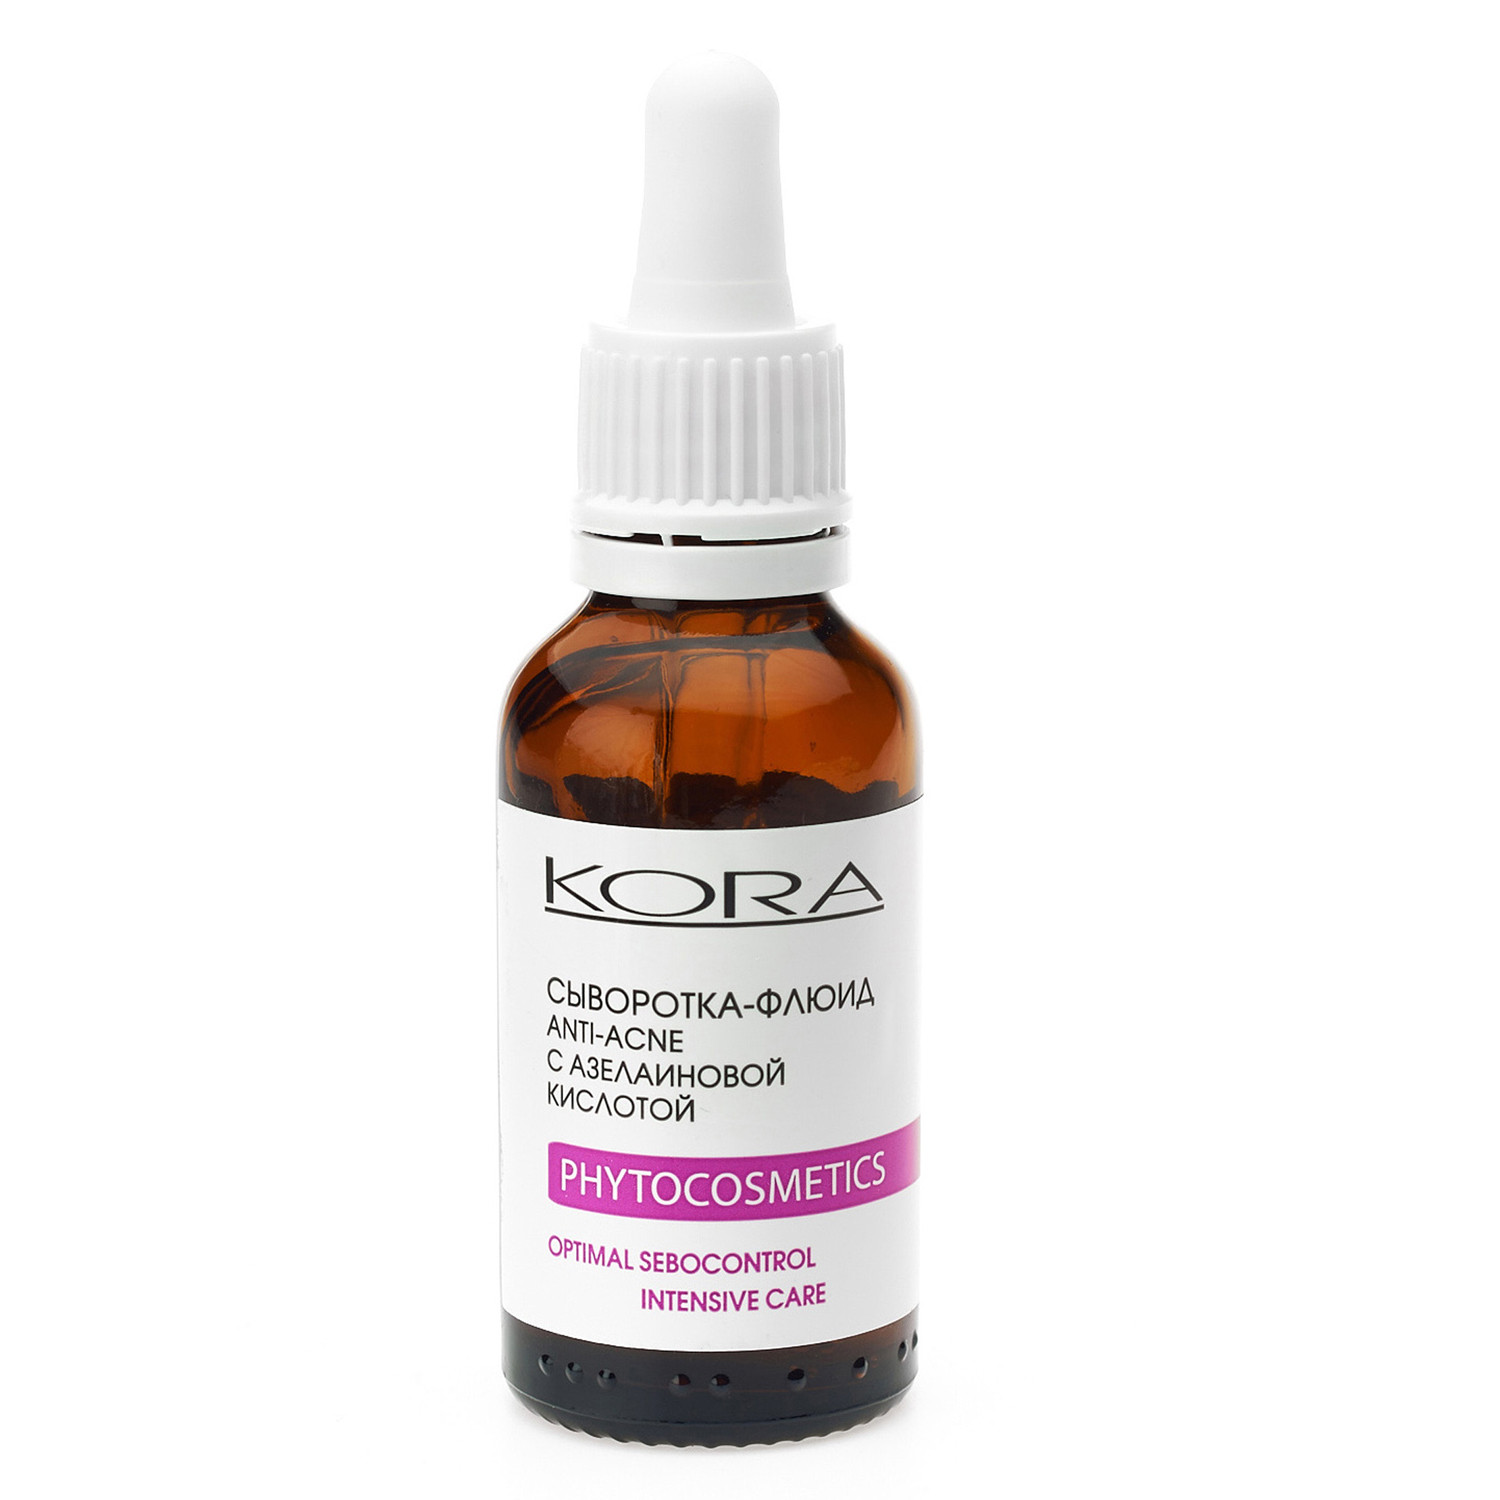 KORA, Сыворотка-флюид anti-acne с азелаиновой кислотой OPTIMAL SEBOCONTROL, 30 мл.